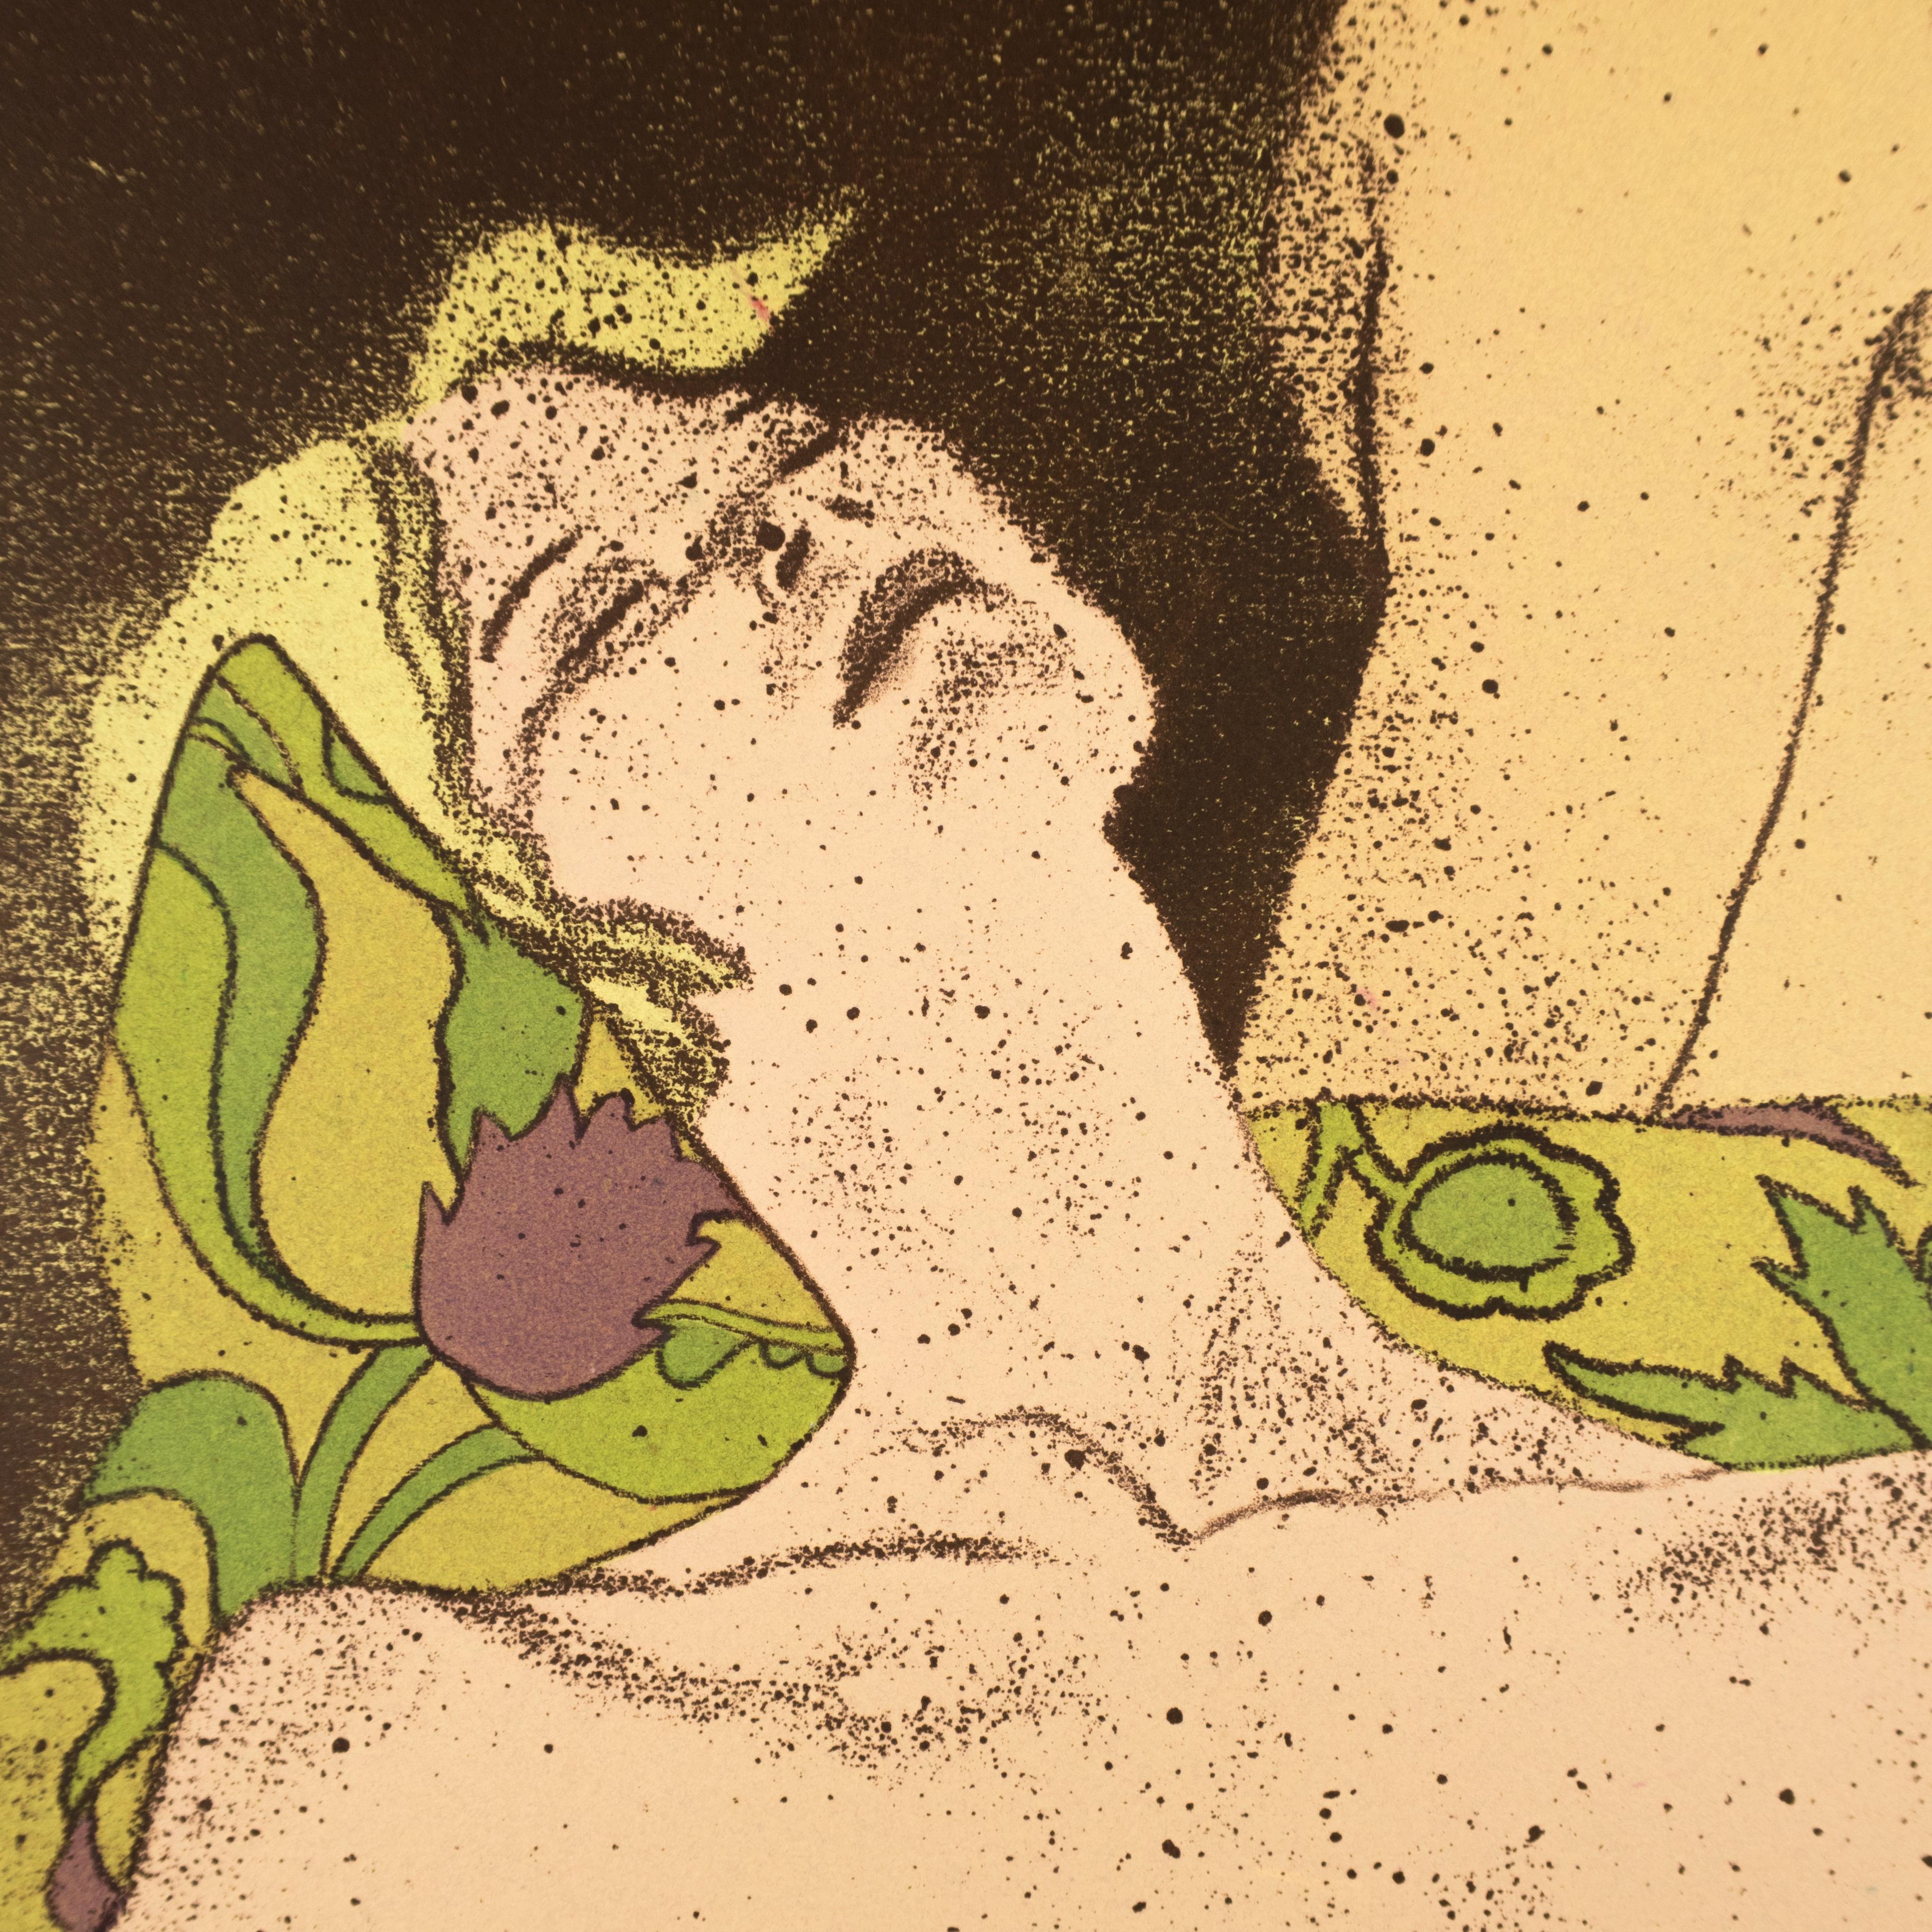 Eine bunte erotische Tagtraumzeichnung einer nackten Blondine, die mit einer rothaarigen Frau und einem Mann fantasiert. Grüne und violette Muster auf Haaren und Kissen sowie Art-déco-Motive zieren diesen sinnlichen Druck. Eine nackte Frau lehnt